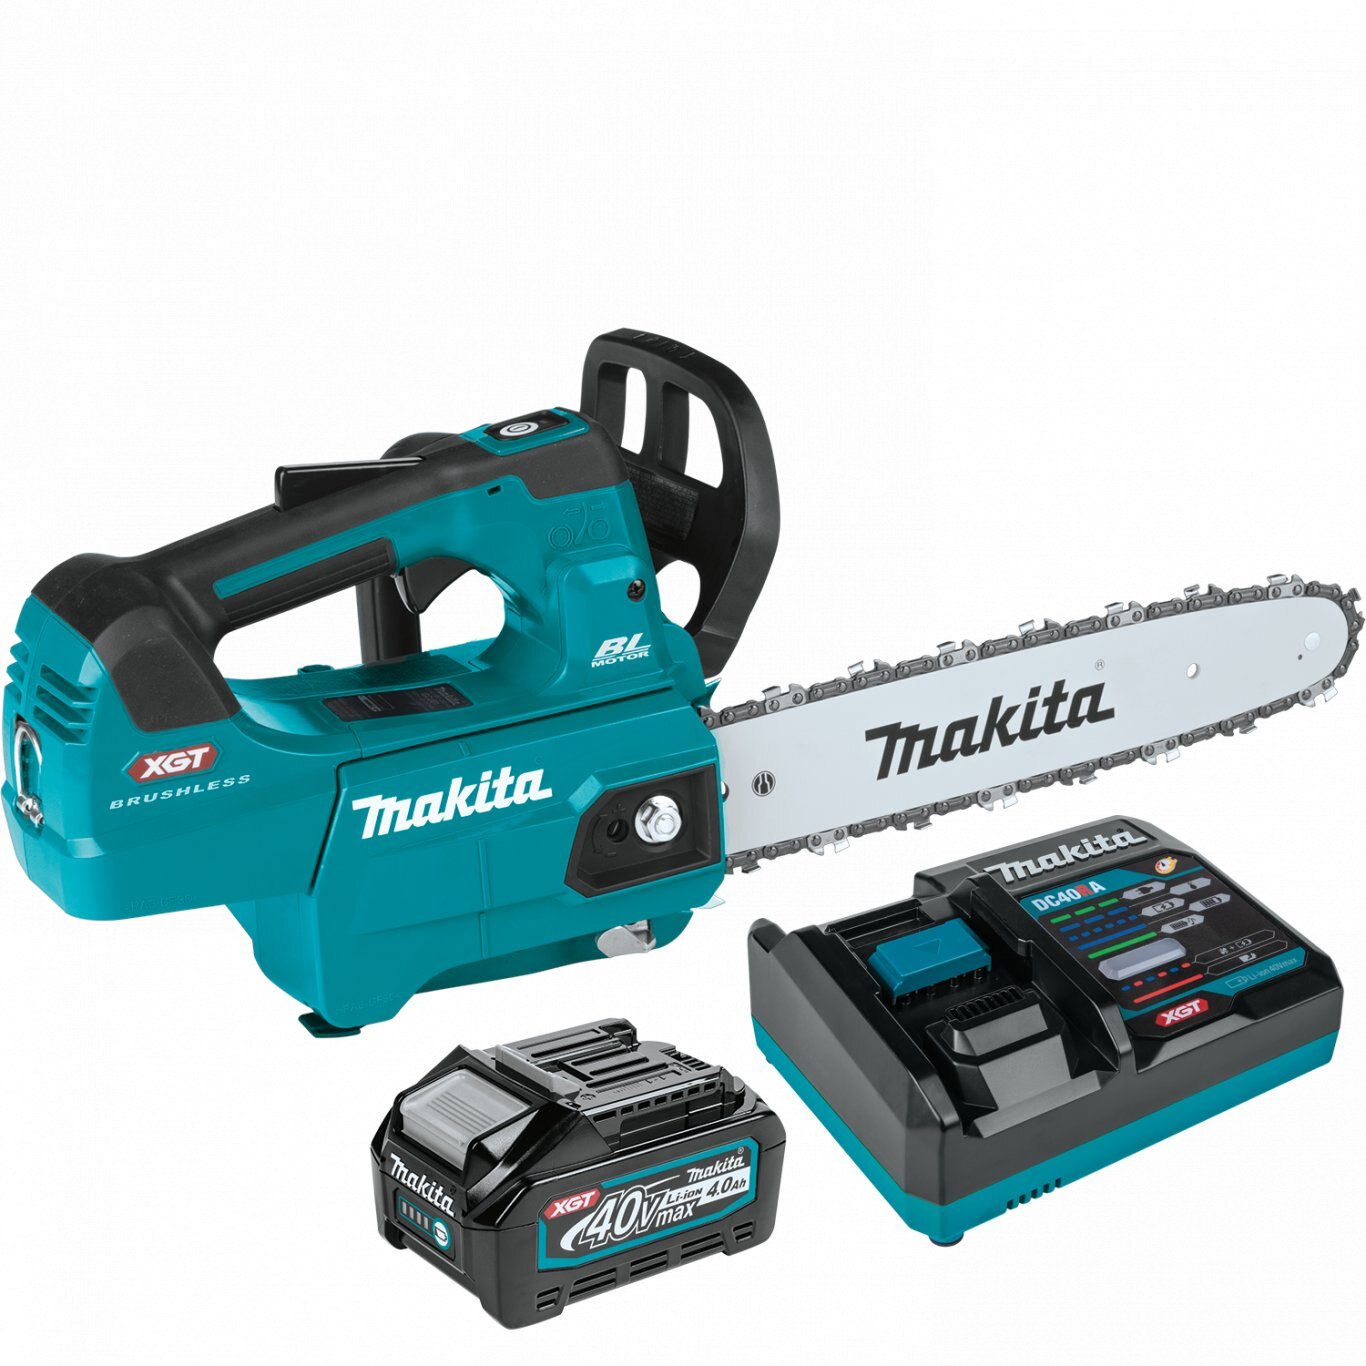 Makita 40V max XGT® Brushless Cordless 12 Top Handle Chain Saw Kit (4.0Ah)